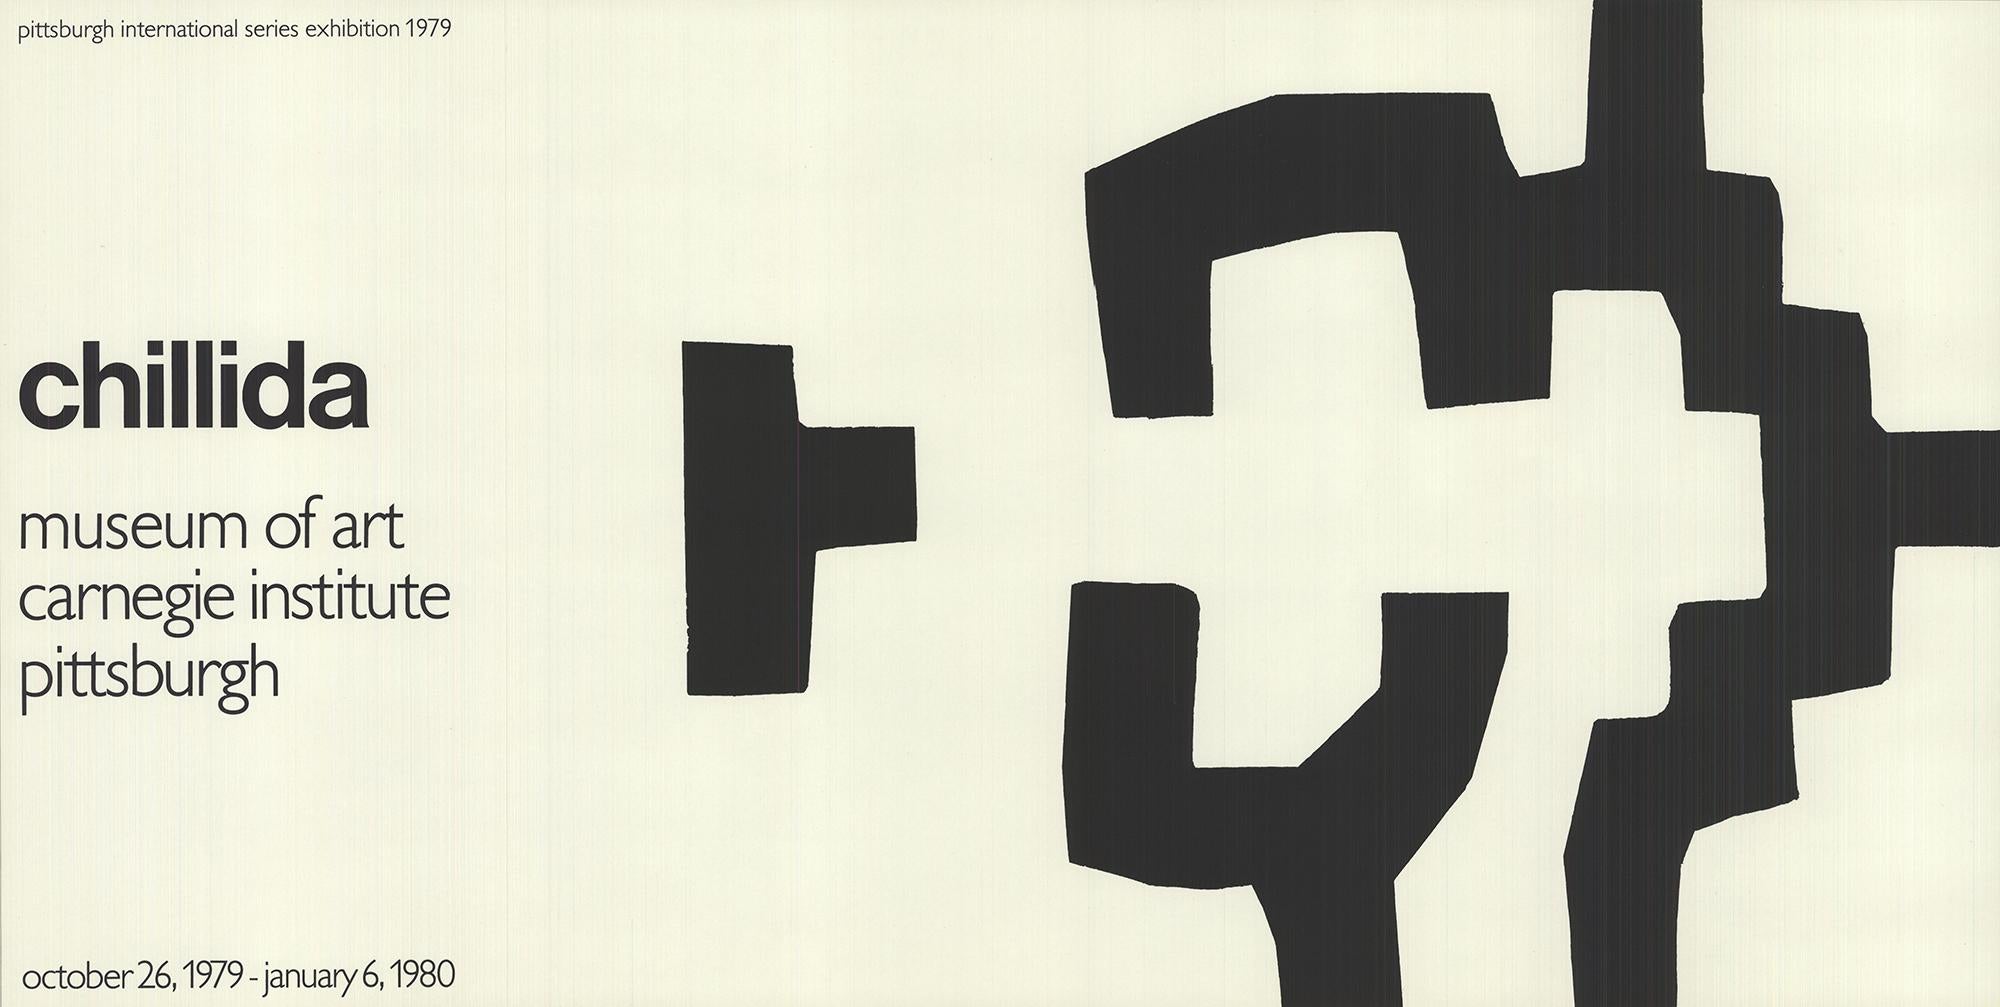 Affiche pour une exposition sur Chillida au Museum of Art Carnegie Institute de Pittsburgh, 1980.